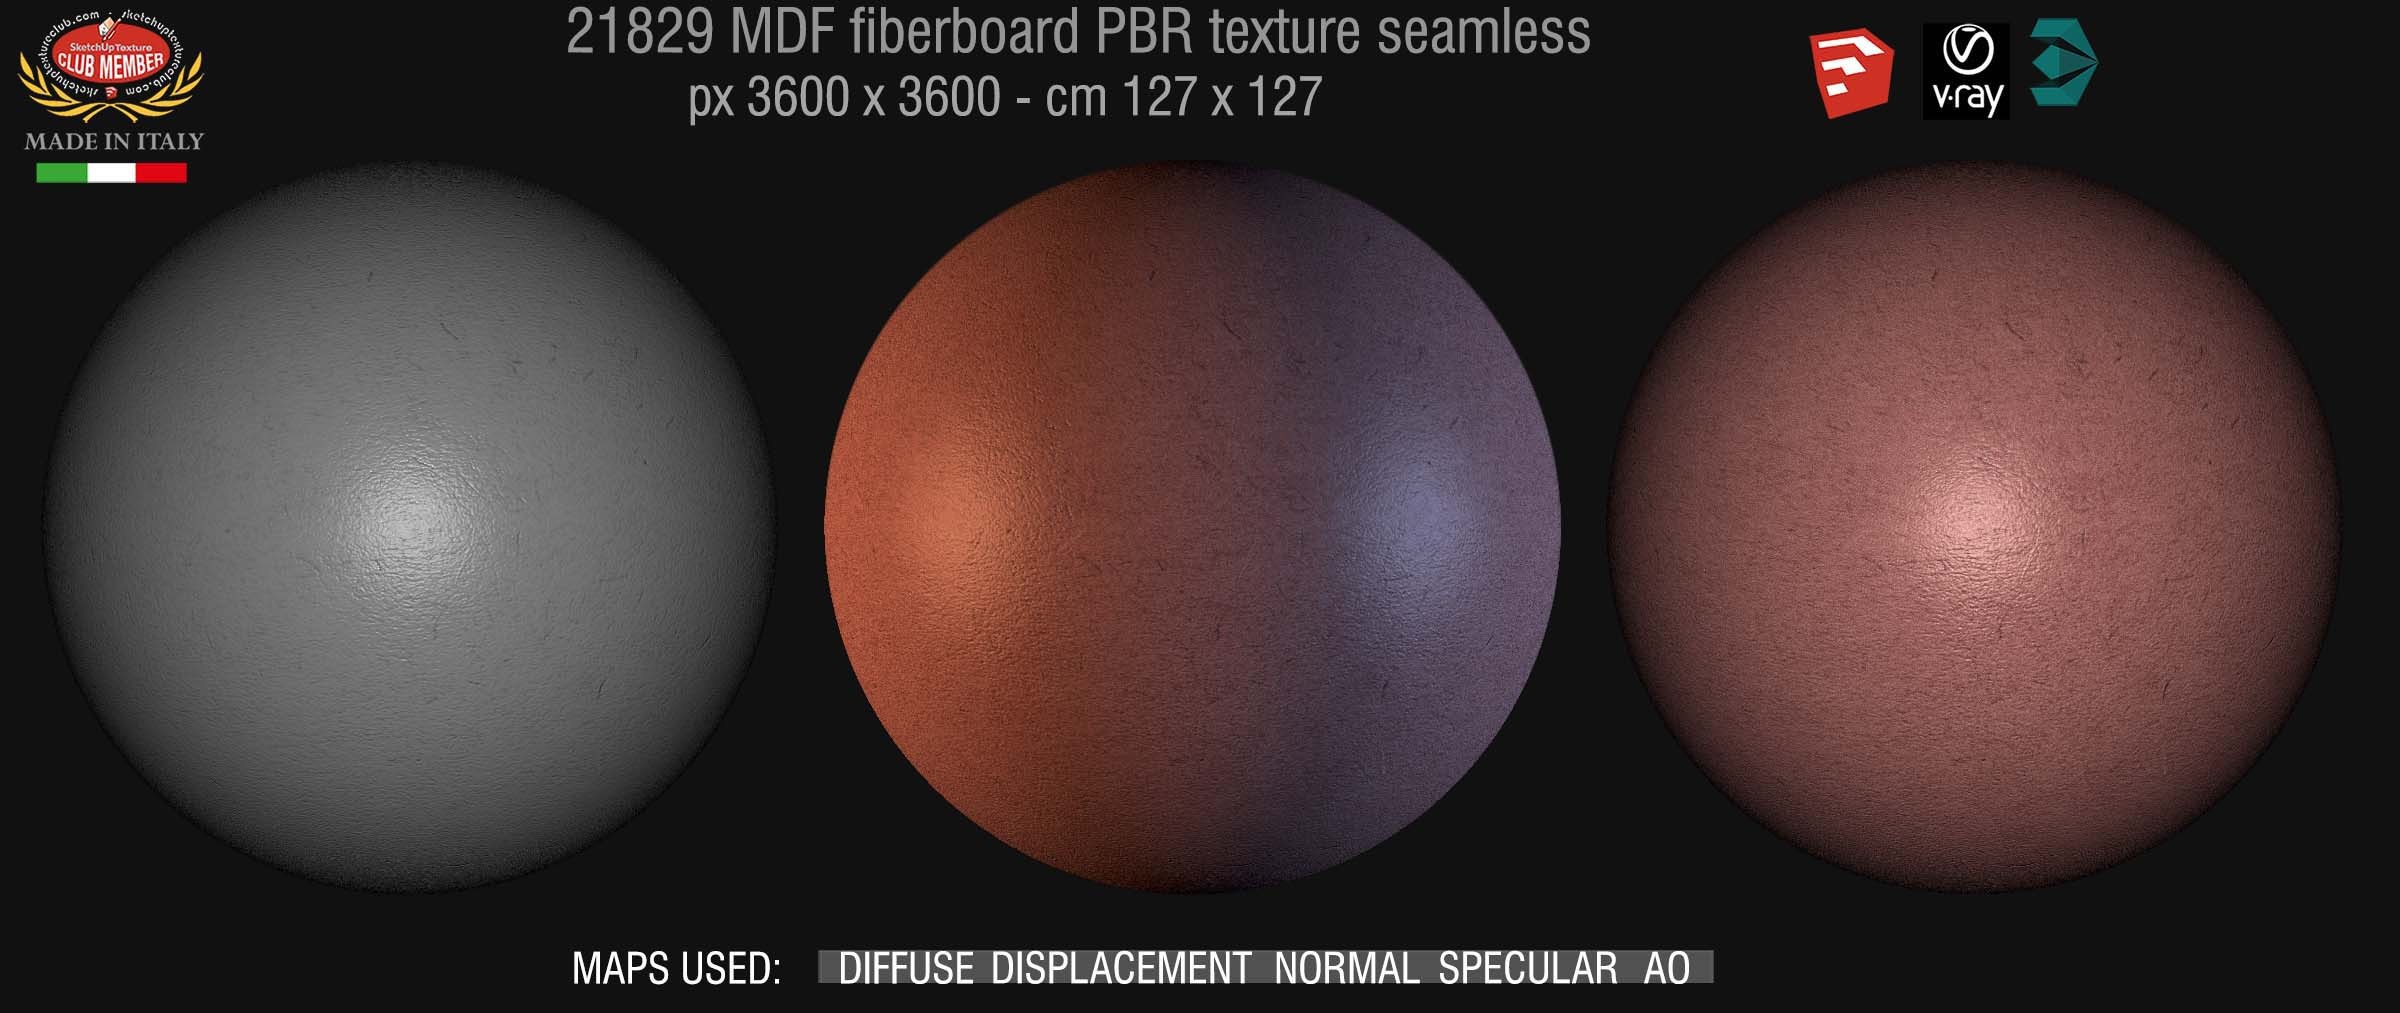 21829 MDF fiberboard PBR texture seamless demo